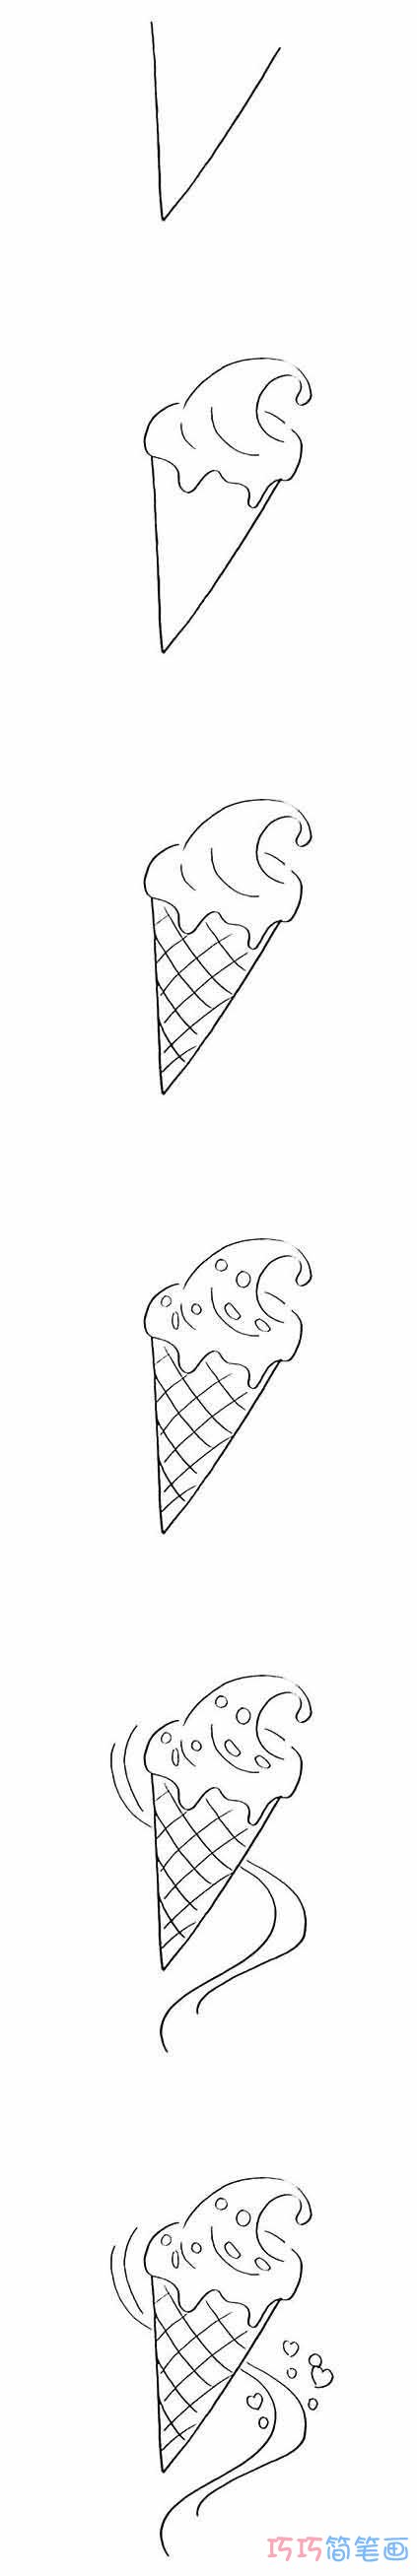 怎么画冰激淋详细步骤图简笔画教程涂色